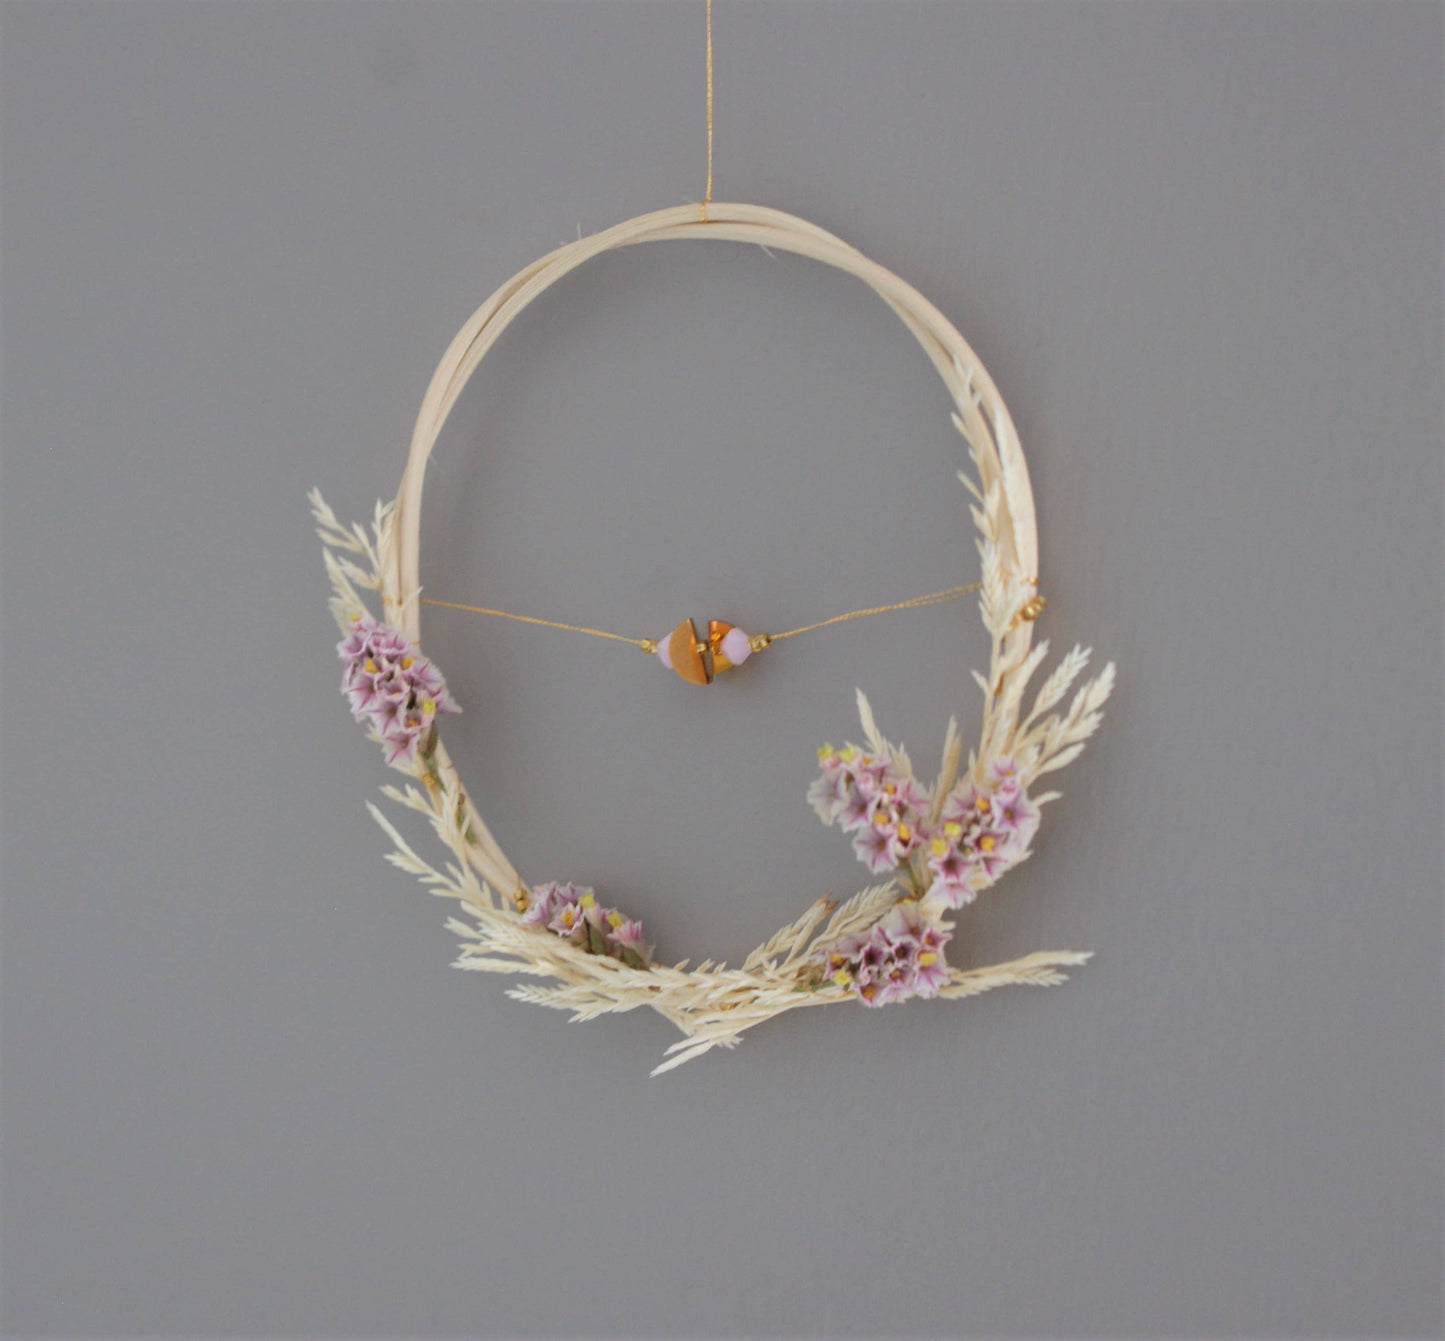 Petite couronne de fleurs sechees avec perles et paillettes pour une decoration naturelle 4